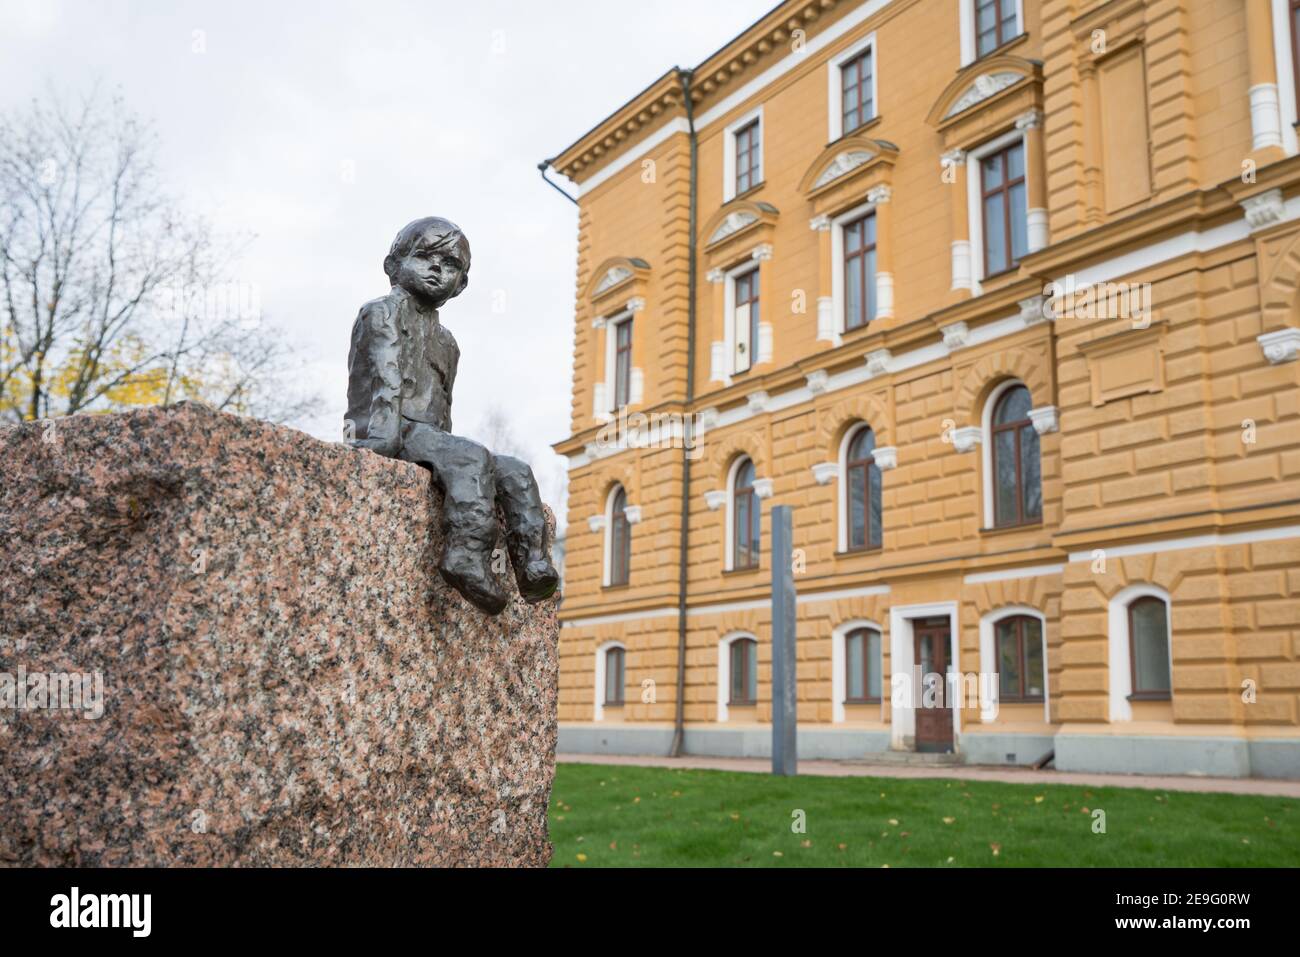 OULU, FINLANDE - 12 octobre 2020 : gros plan de la sculpture en bronze du jeune garçon d'arrivée, assis devant l'hôtel de ville sur du granit souriant au passage de Tim Banque D'Images